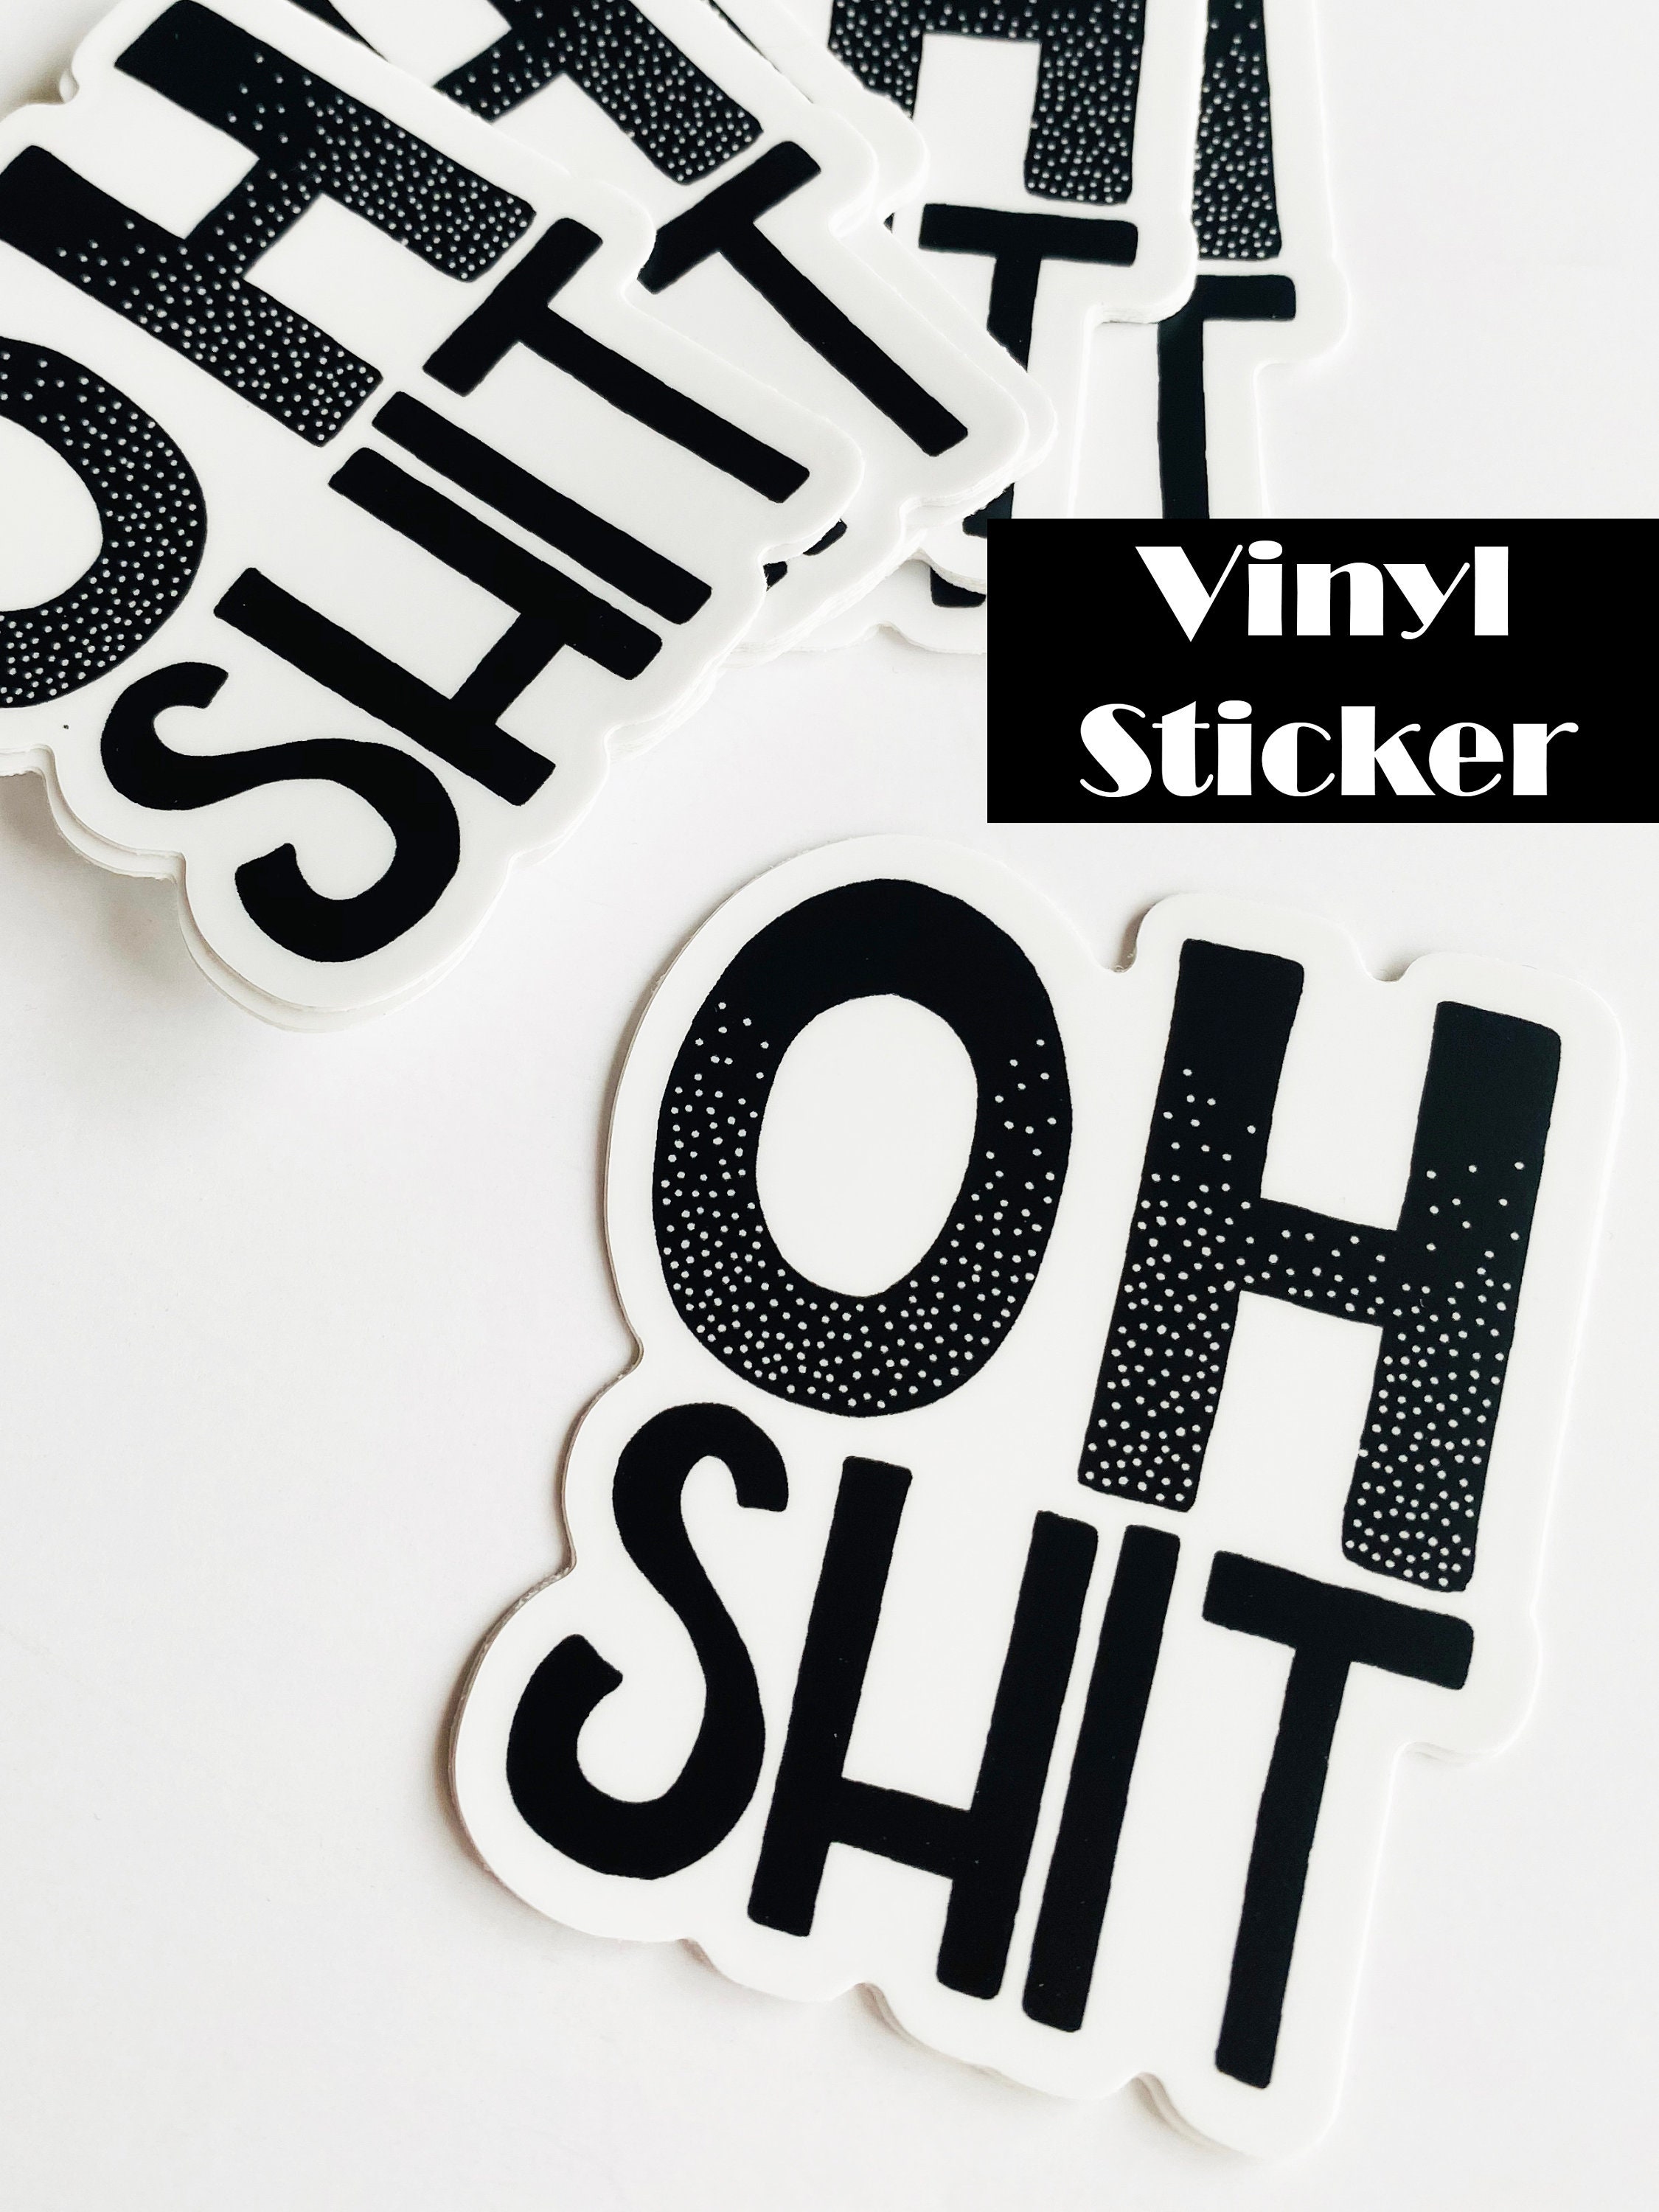 Scheisse Vinyl Sticker Vinyl, kostenloser Versand, Sticker,turd